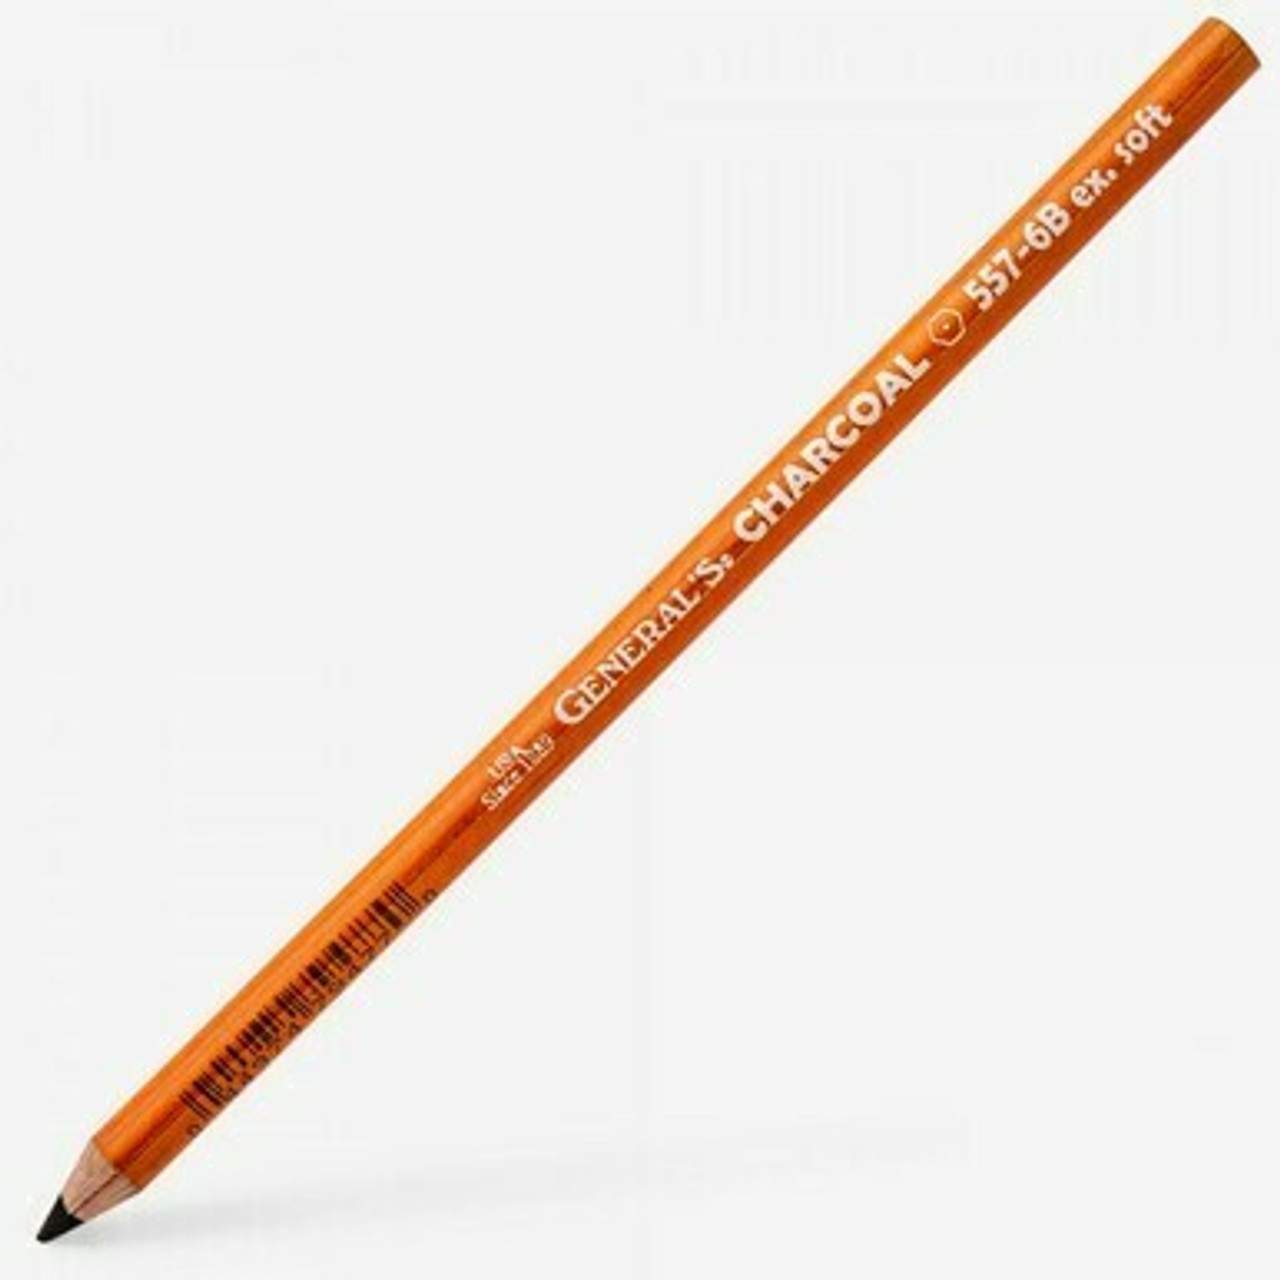 Generals Charcoal Pencil HB - Hard